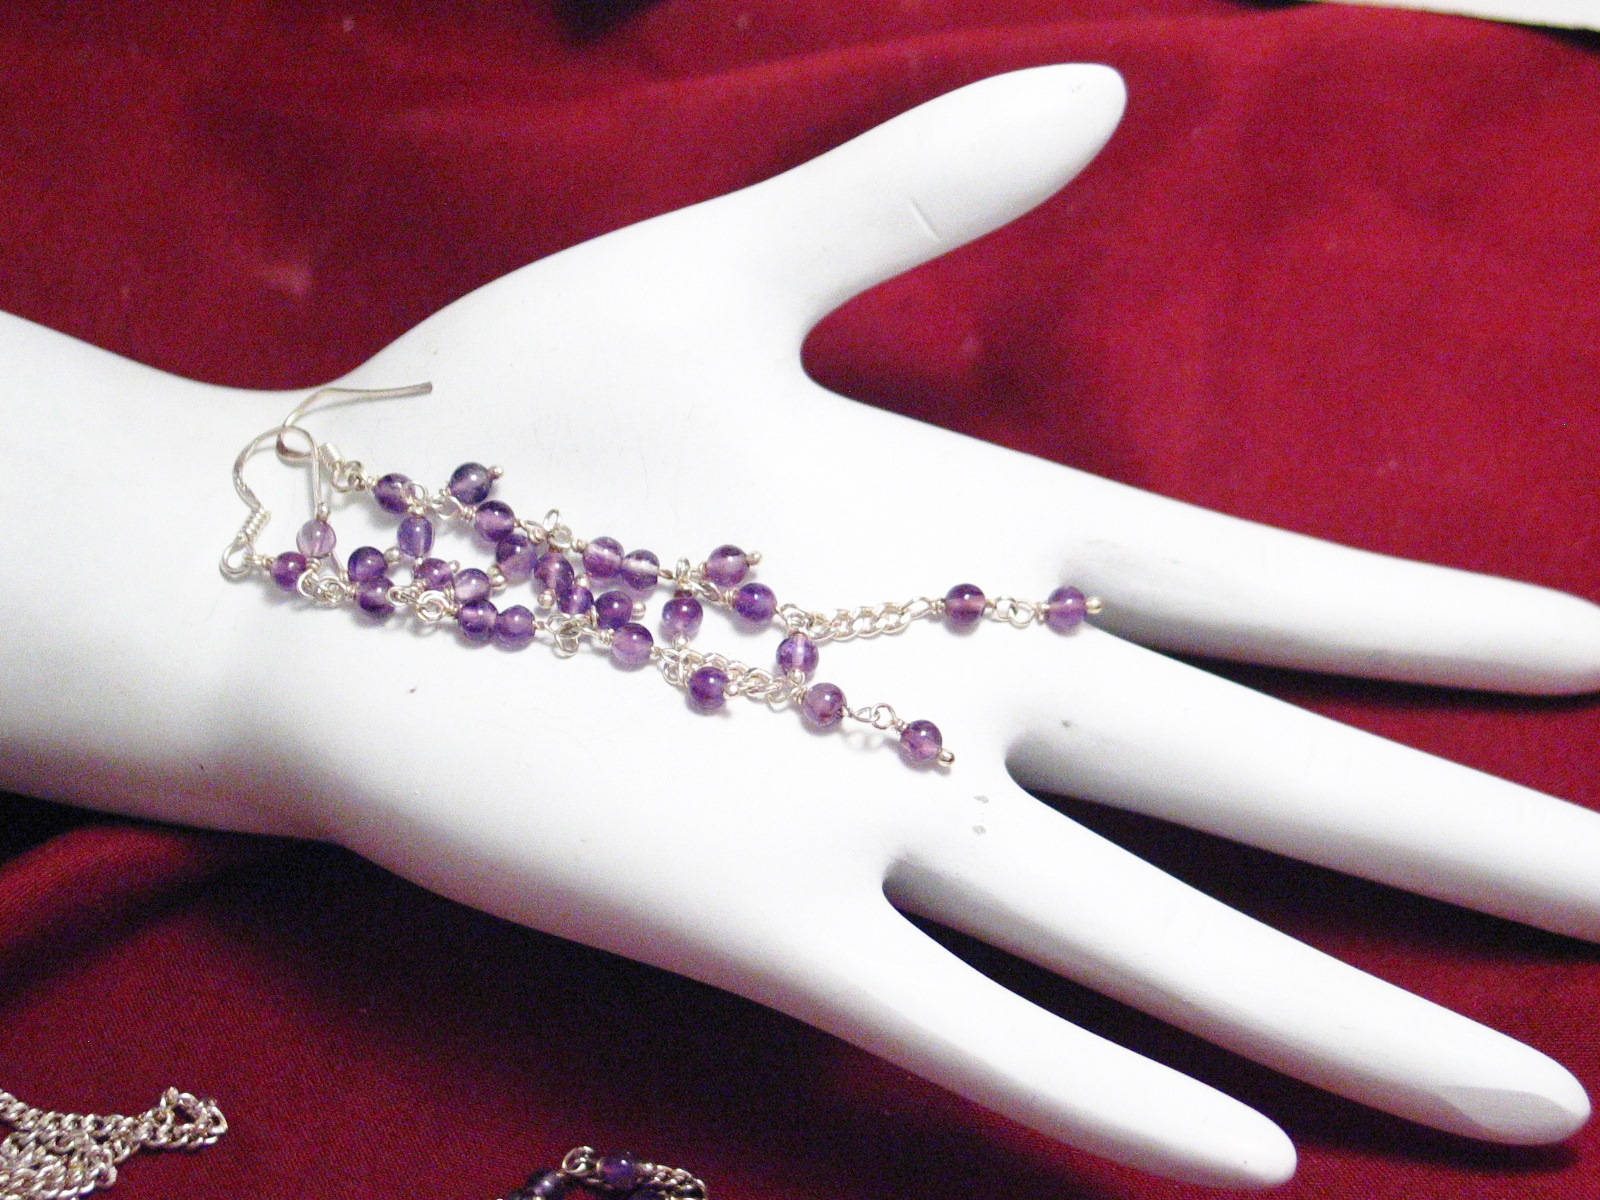 Earrings | 3.5" Sterling Silver Beaded Amethyst Earrings & Tassel Necklace set 18" | Jewelry